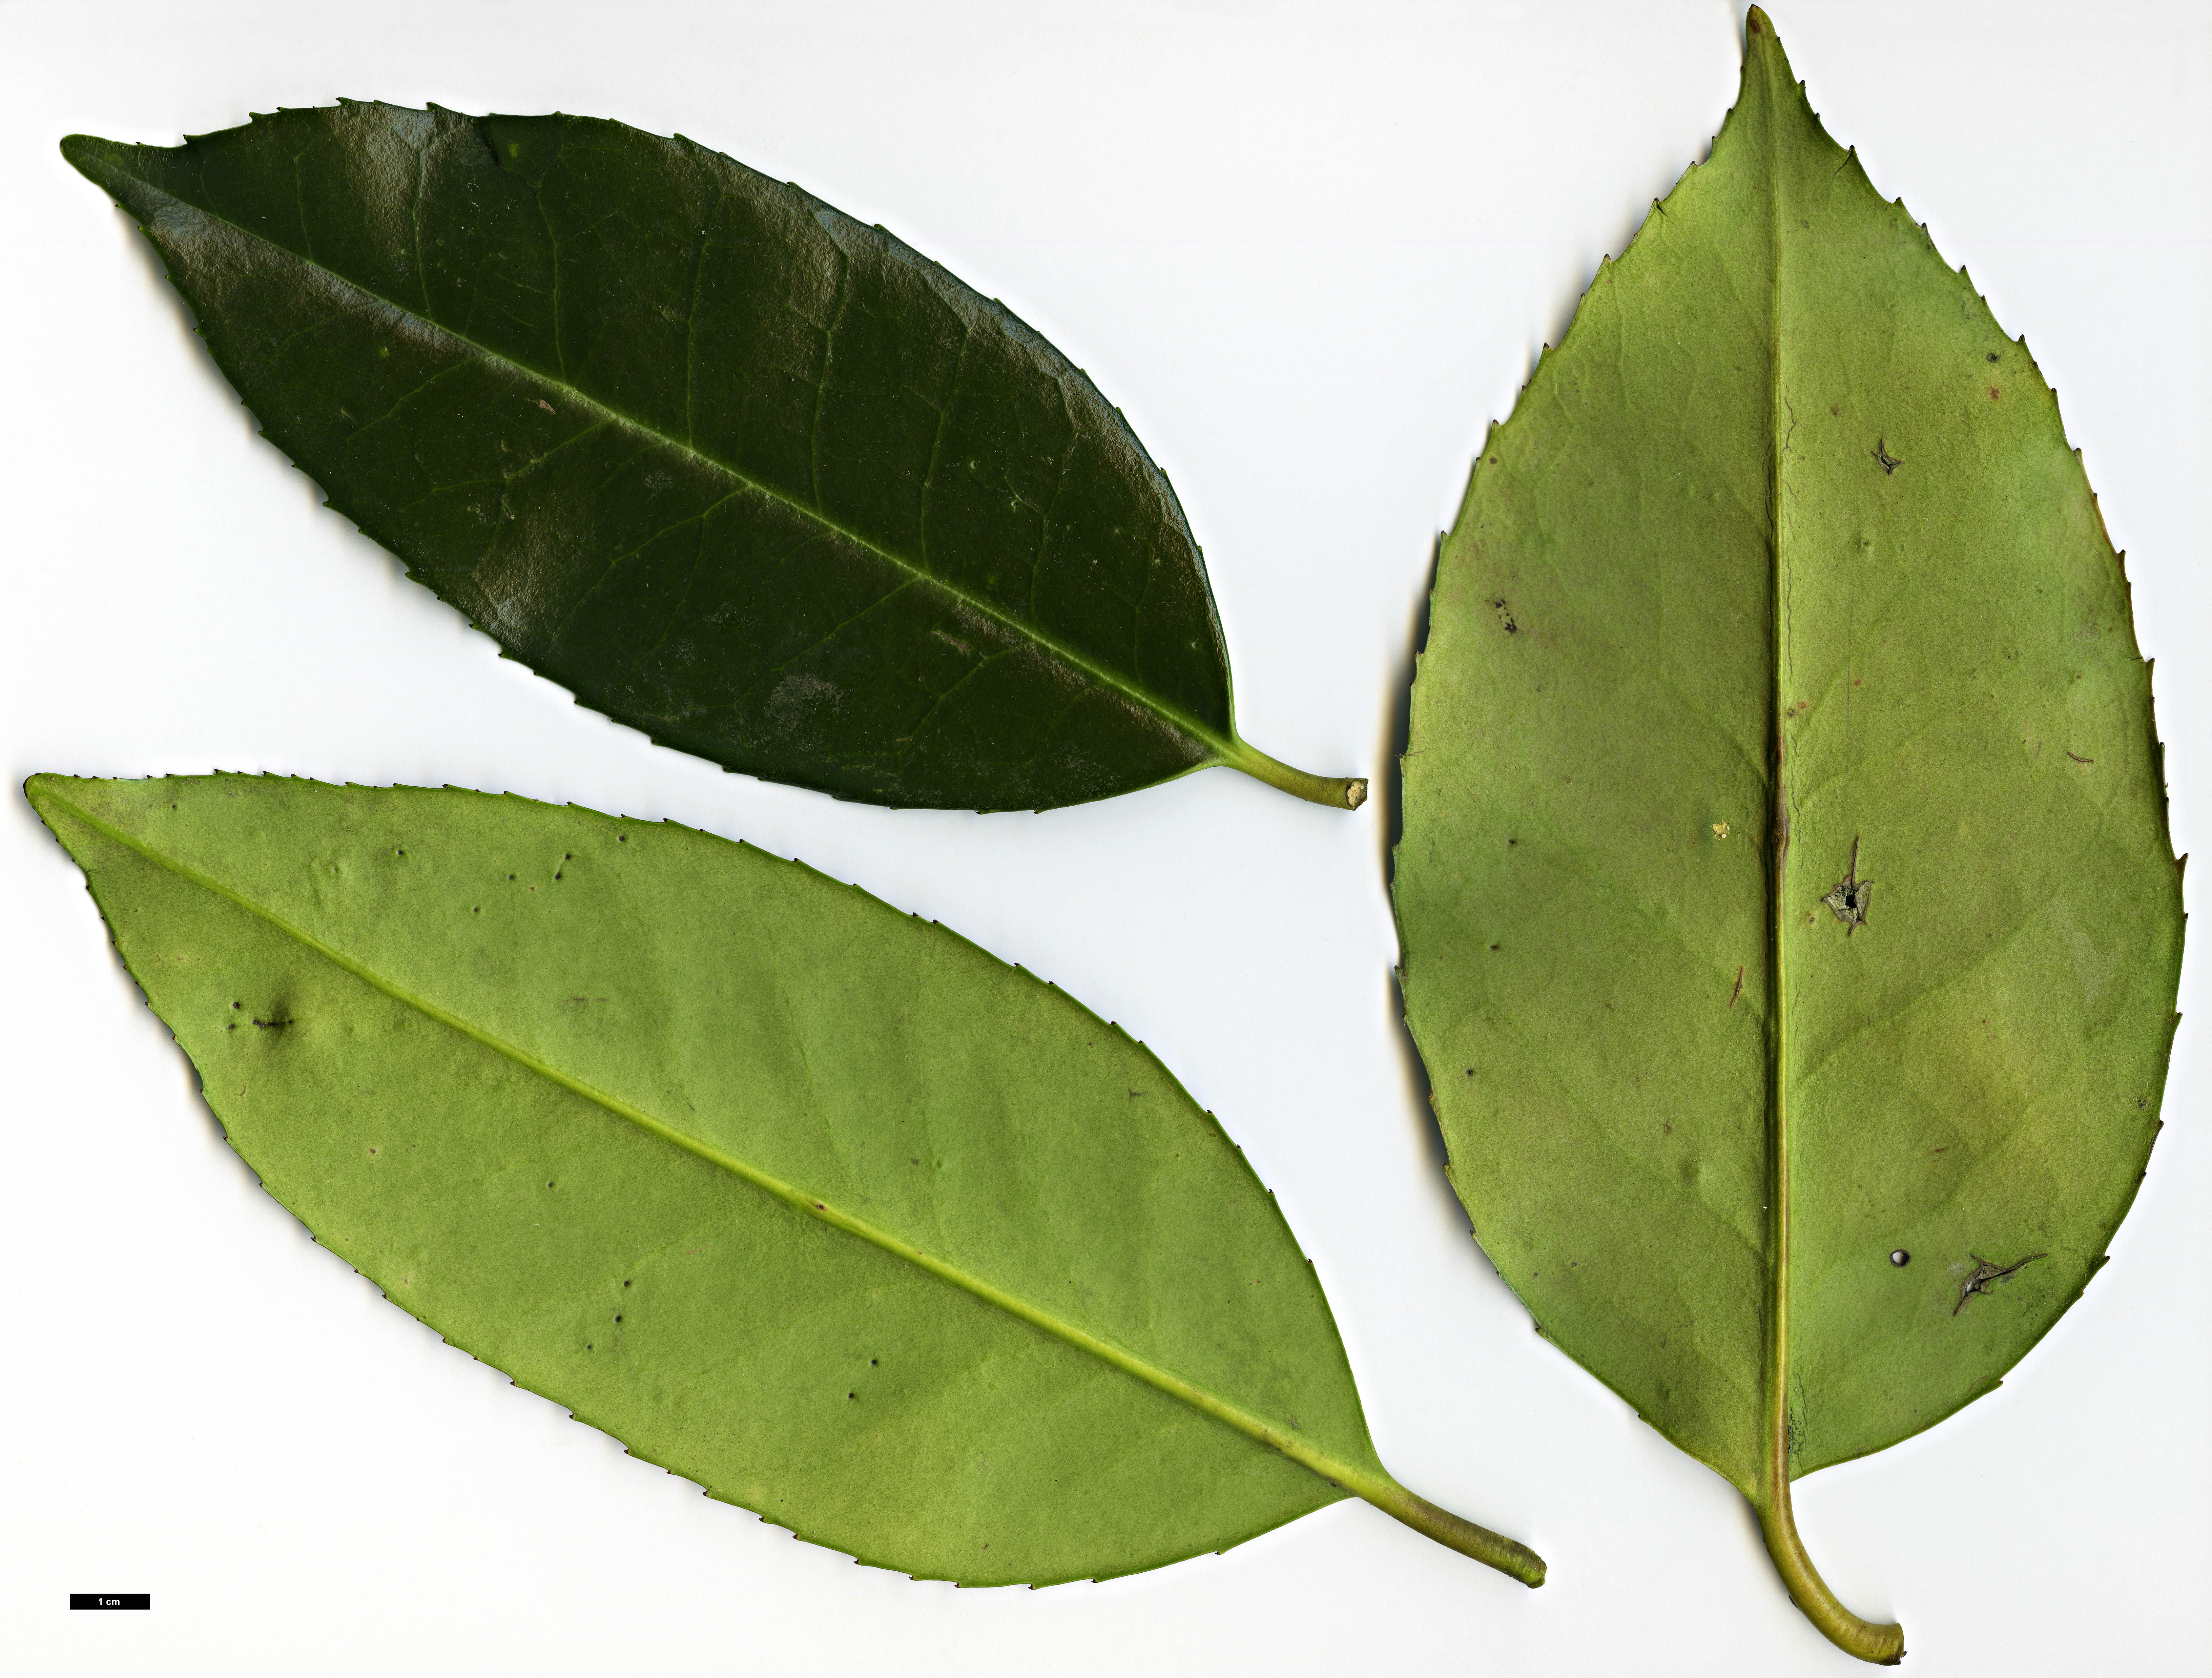 High resolution image: Family: Aquifoliaceae - Genus: Ilex - Taxon: latifolia